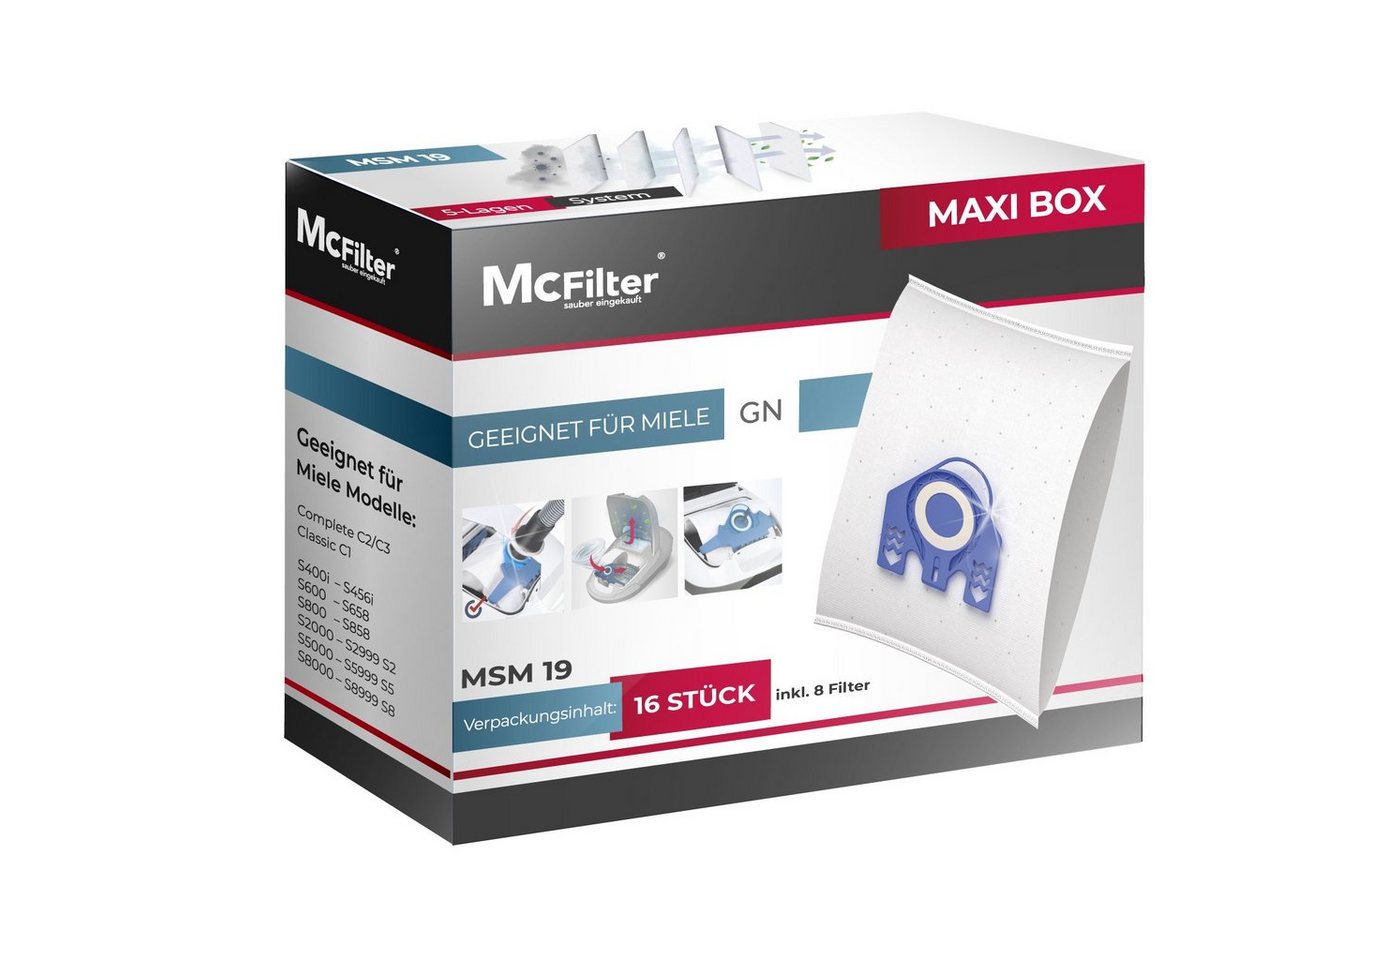 McFilter Staubsaugerbeutel >MAXI BOX< (16+8), passend für Miele Complete C2 Serie Staubsauger, inkl. 8 Filter, 16 St., Top Alternative zu 9917730, wie Miele 10408410 von McFilter